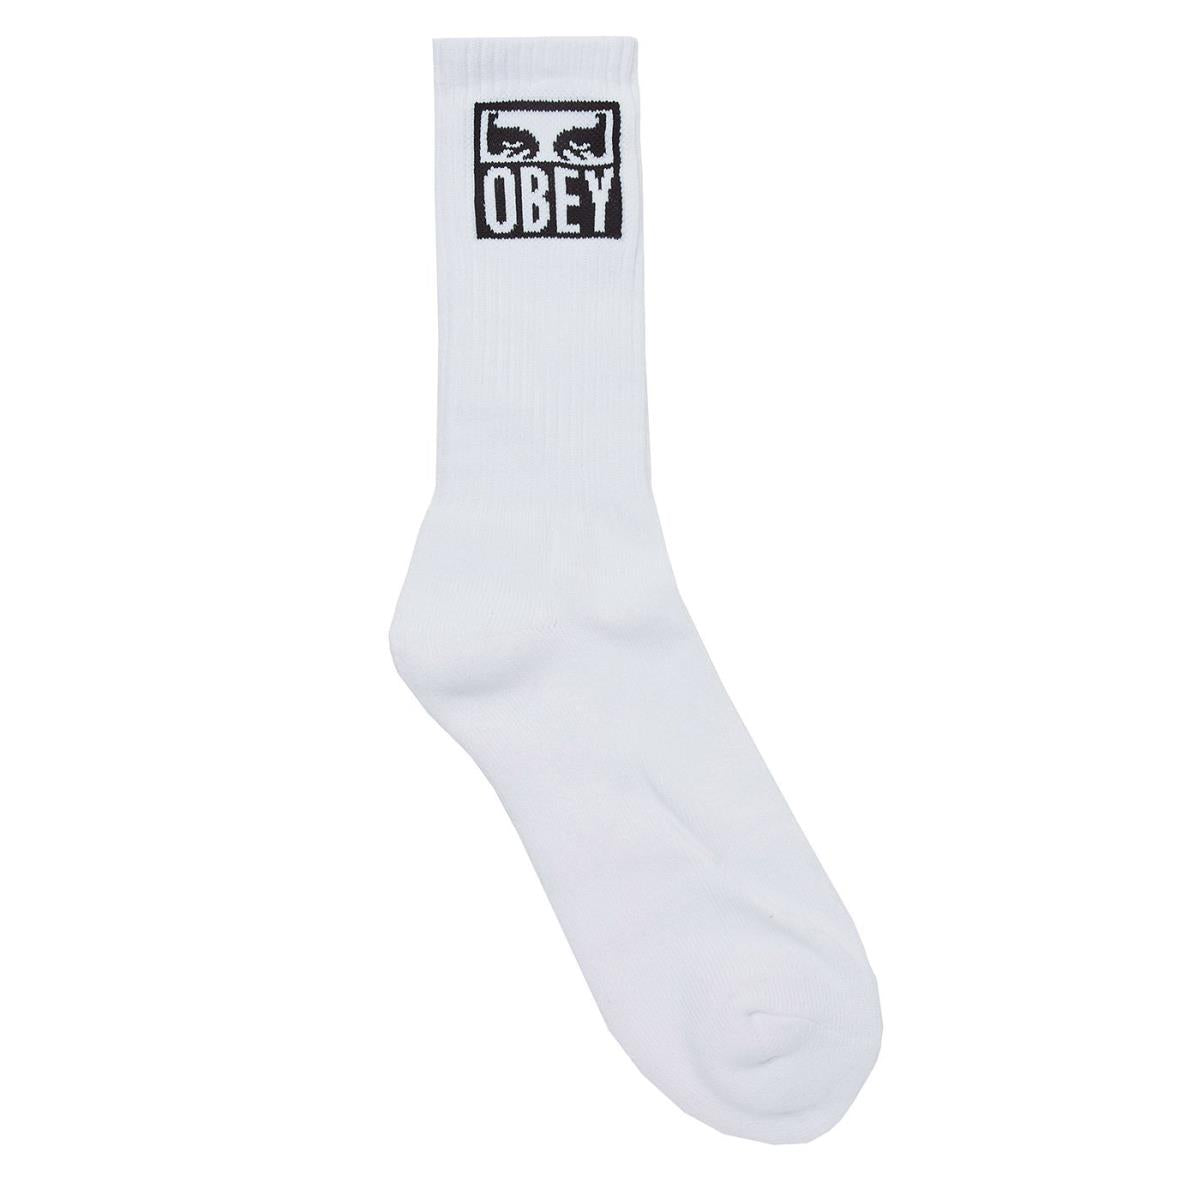 100260141 - Socks - Obey